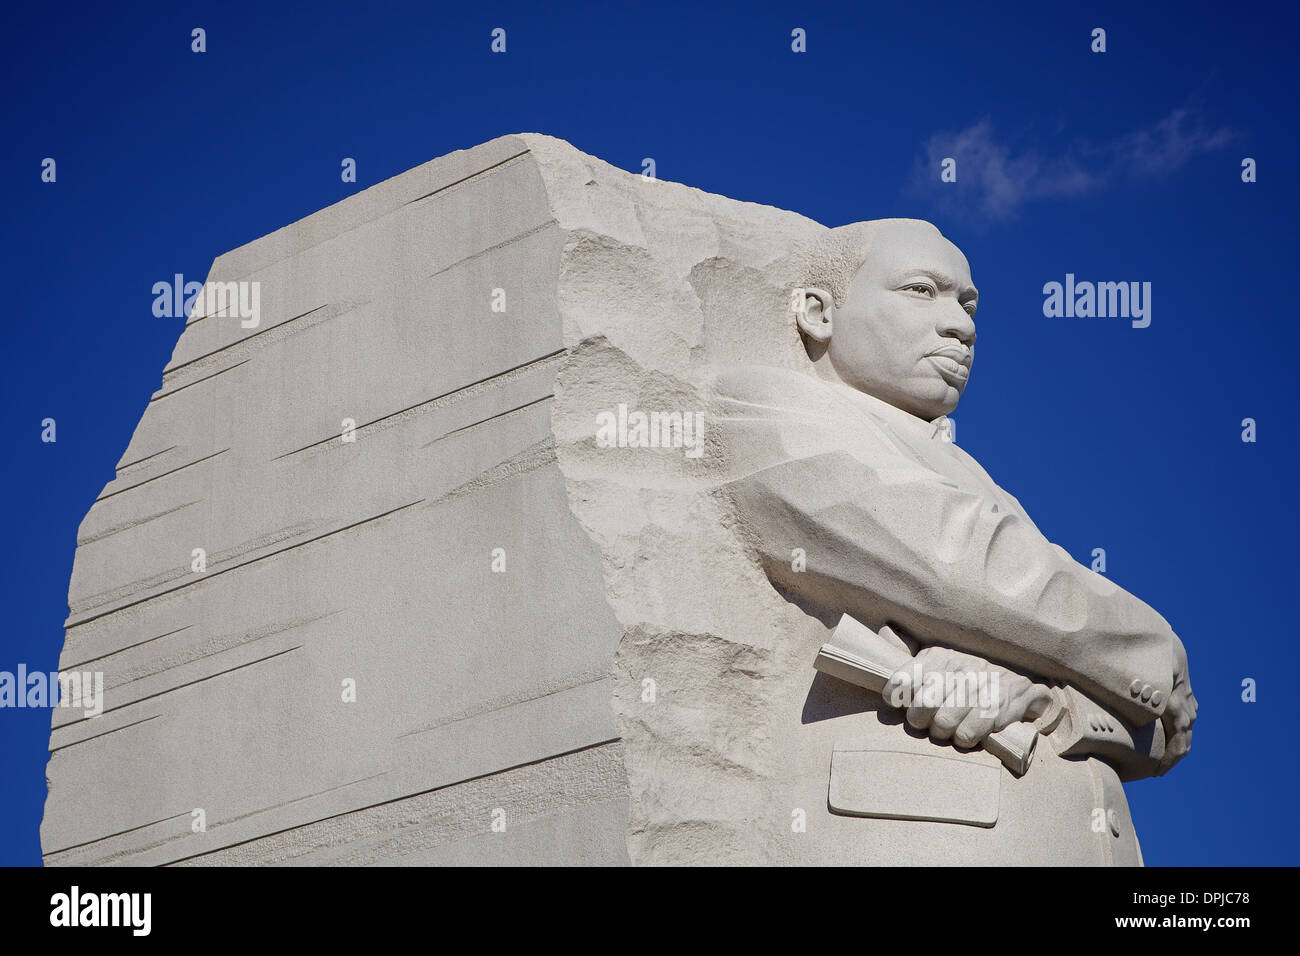 Der 30-Fuß-Skulptur und Denkmal des MLK, Martin Luther King Jr. der Zivilrechte Führer auf der National Mall in Washington, D.C. Stockfoto